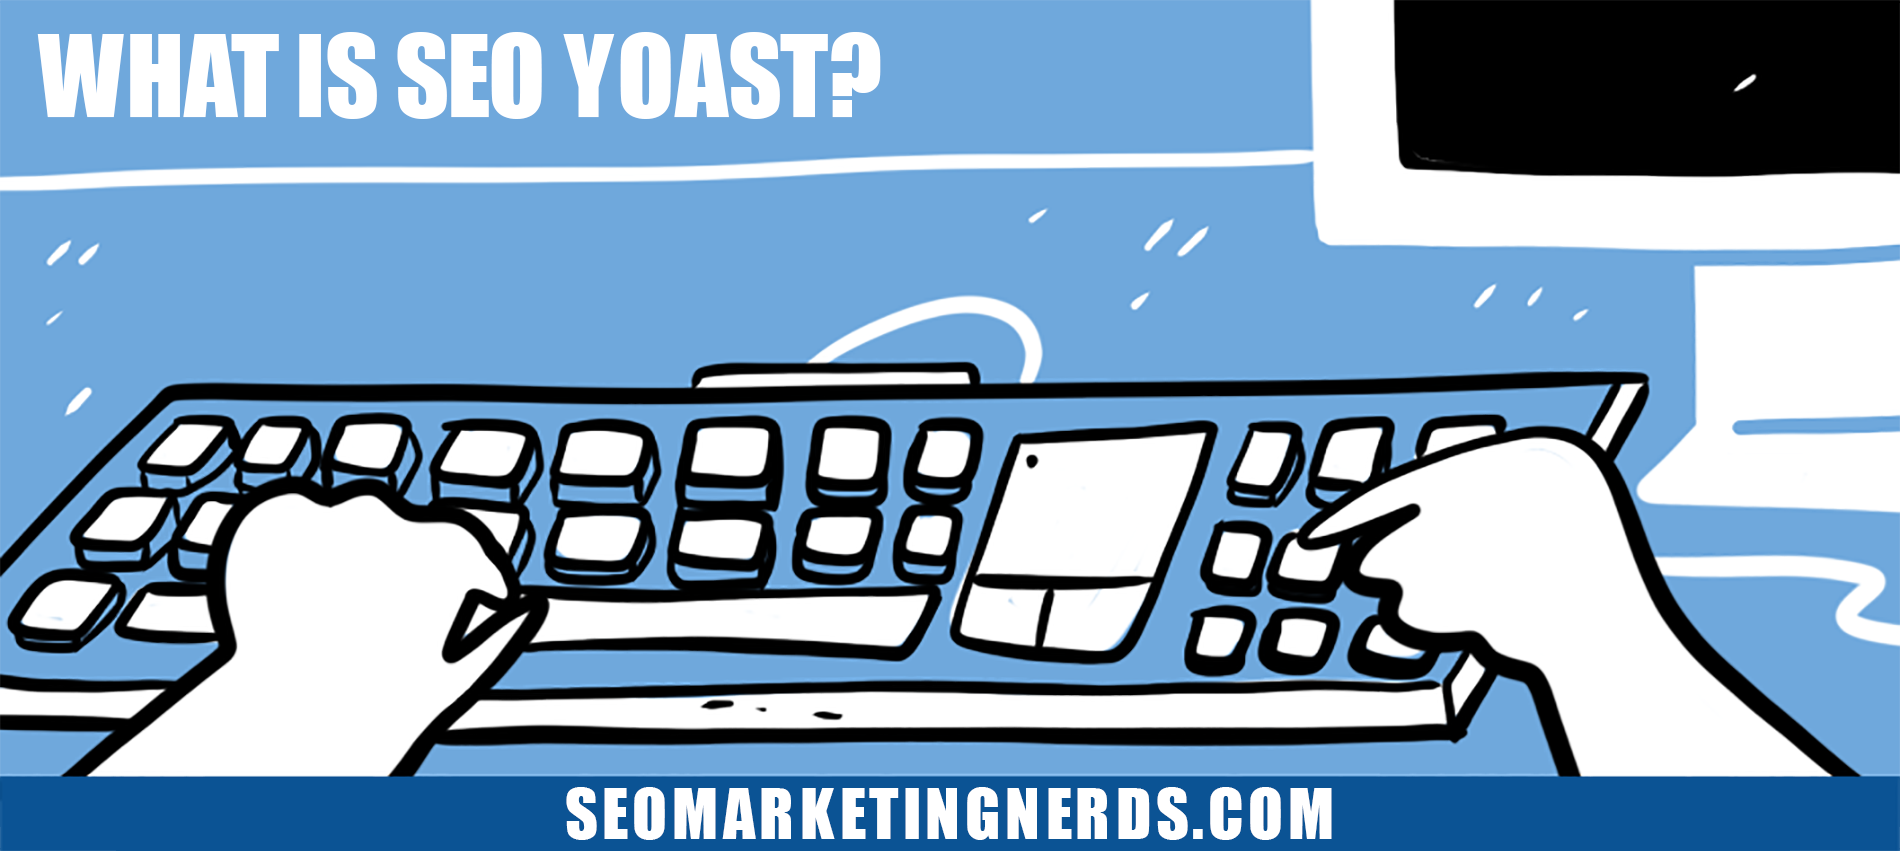 What Is SEO Yoast?